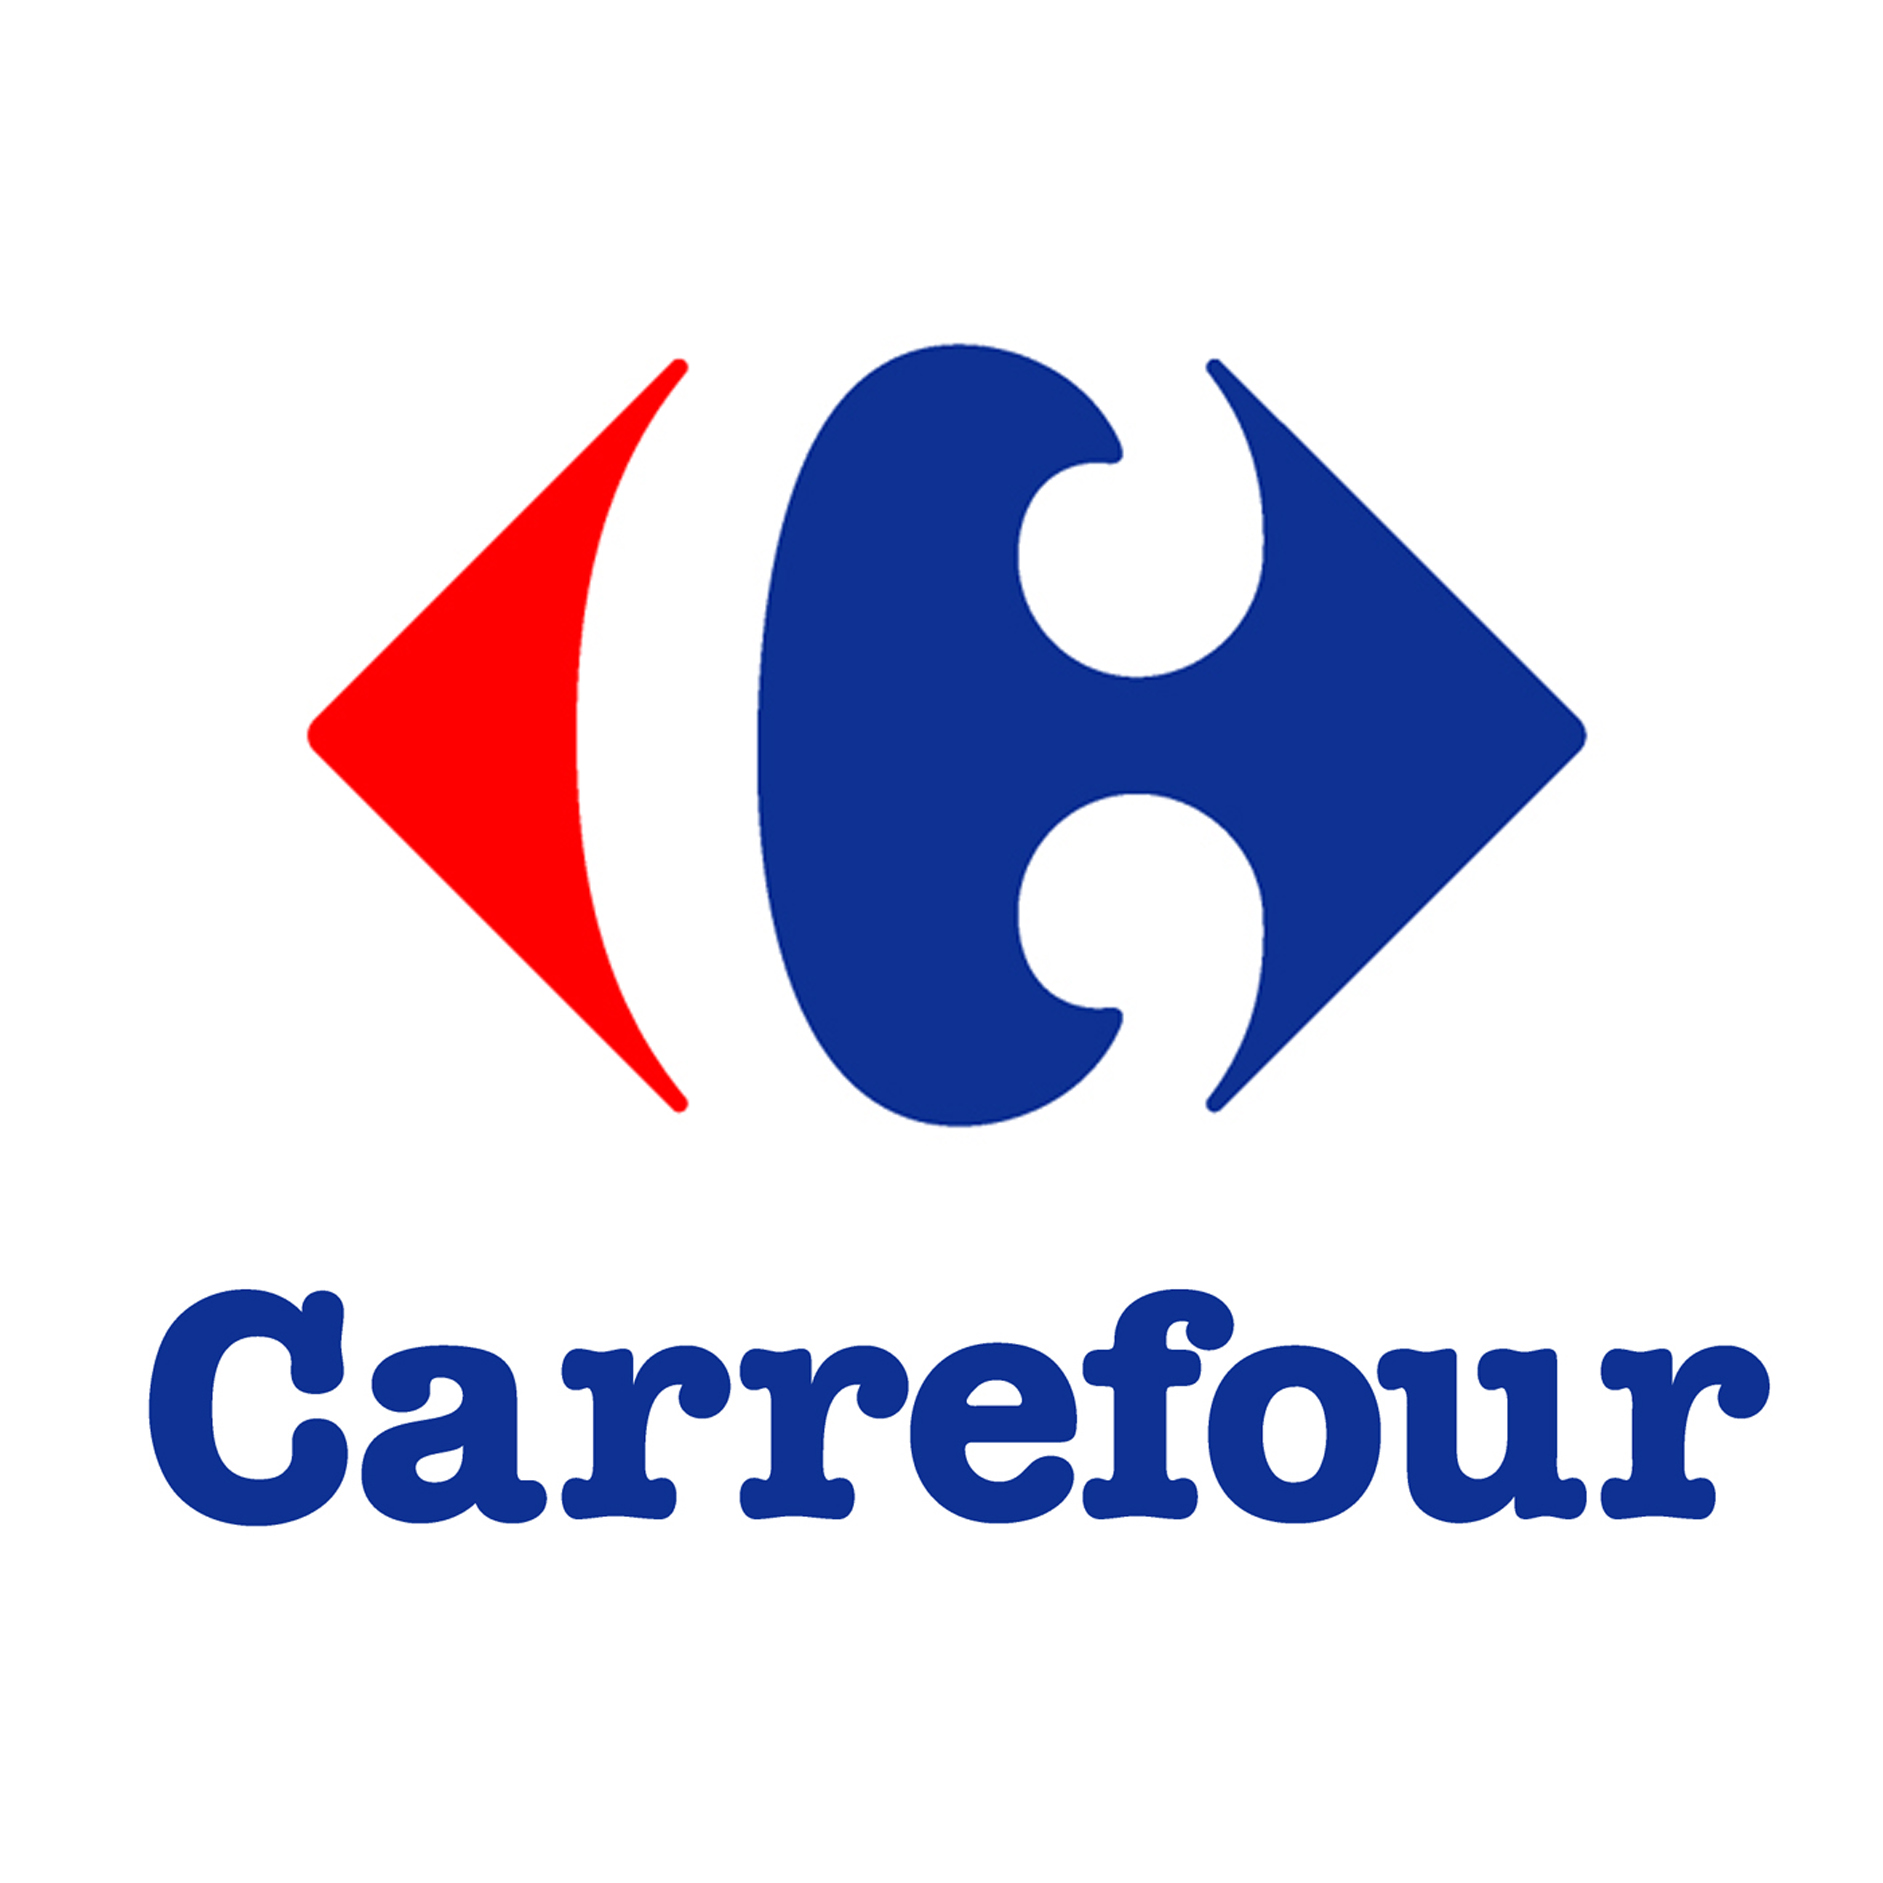 Le groupe Carrefour rachète la startup Dejbox, Cedric O est très content